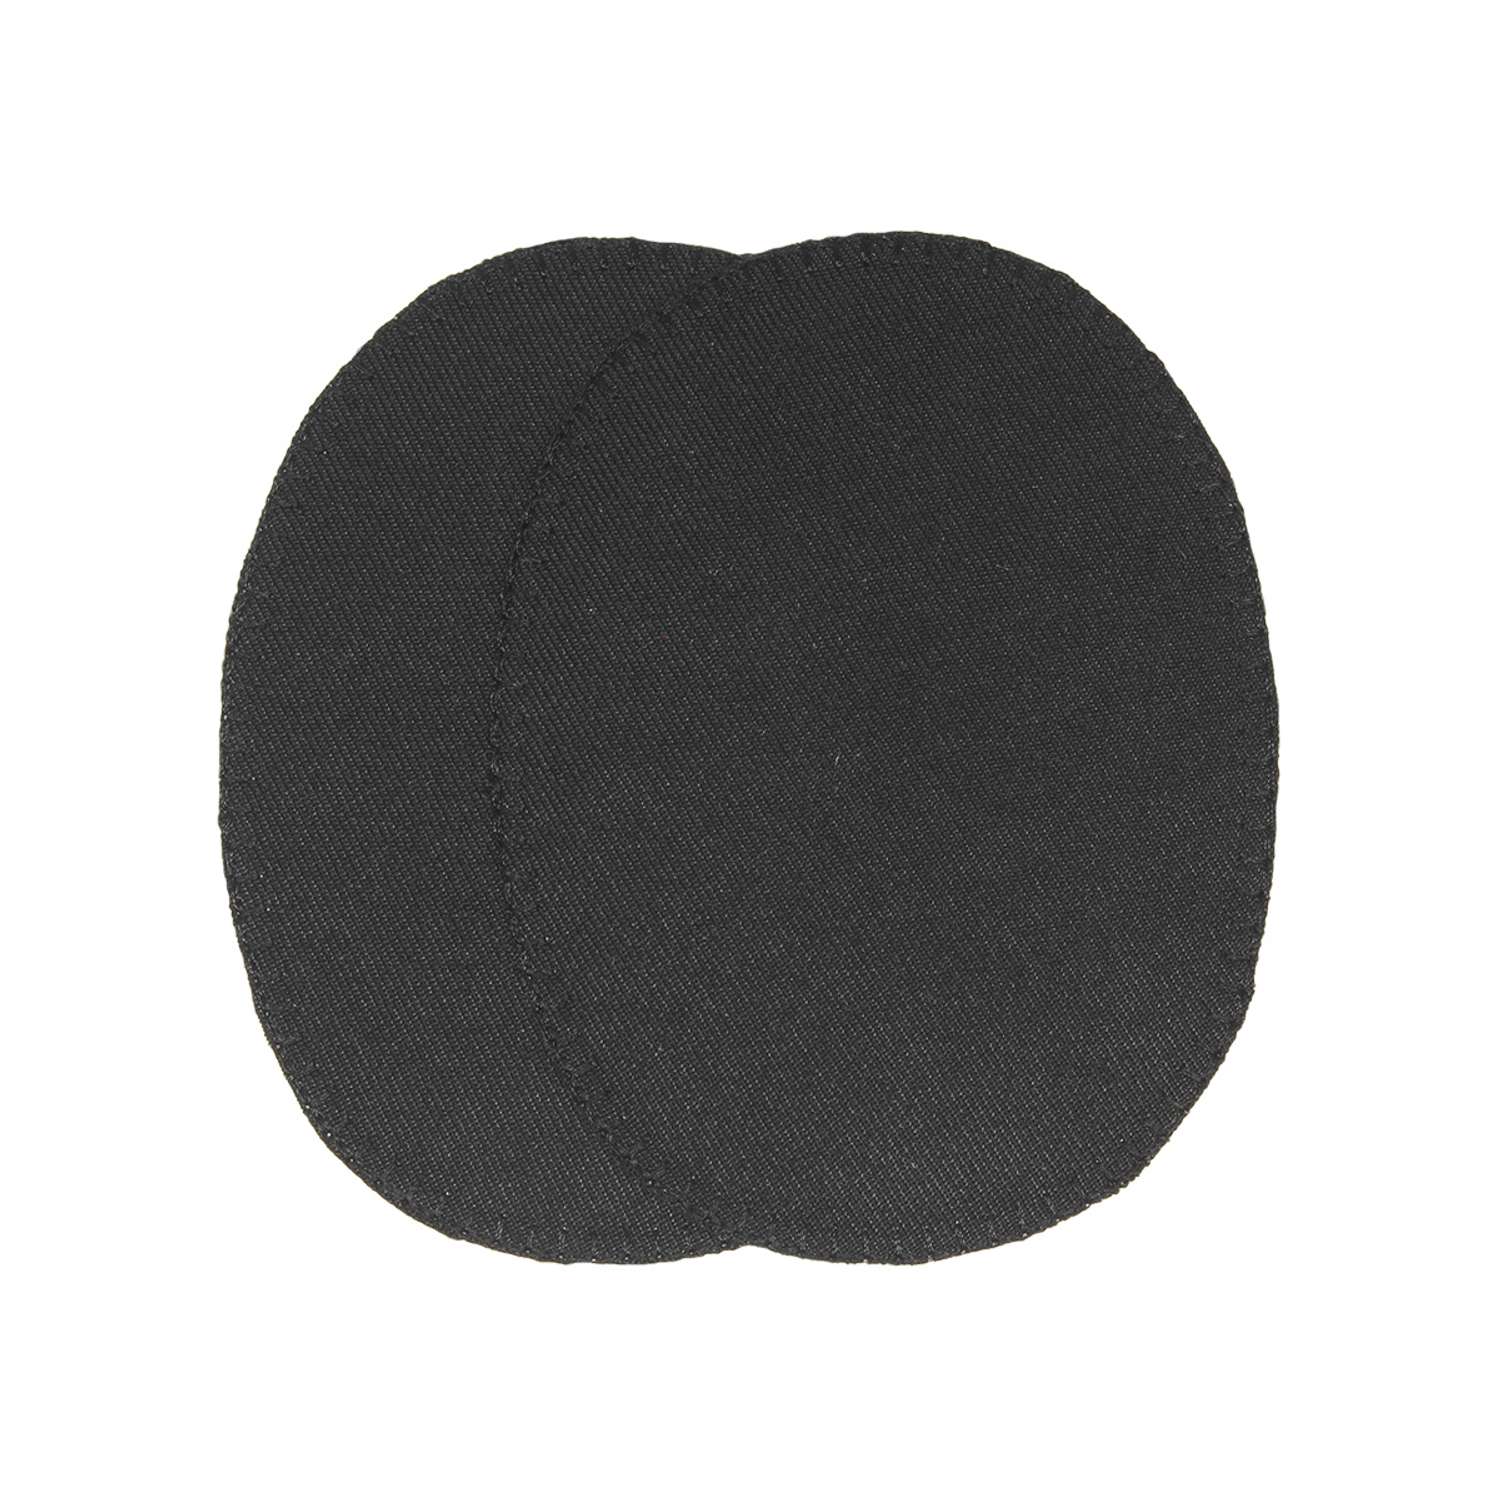 Заплатка Prym термоклеевая из джинсовой ткани деним для уплотнения ткани 8х11 см черный 929308 - фото 1